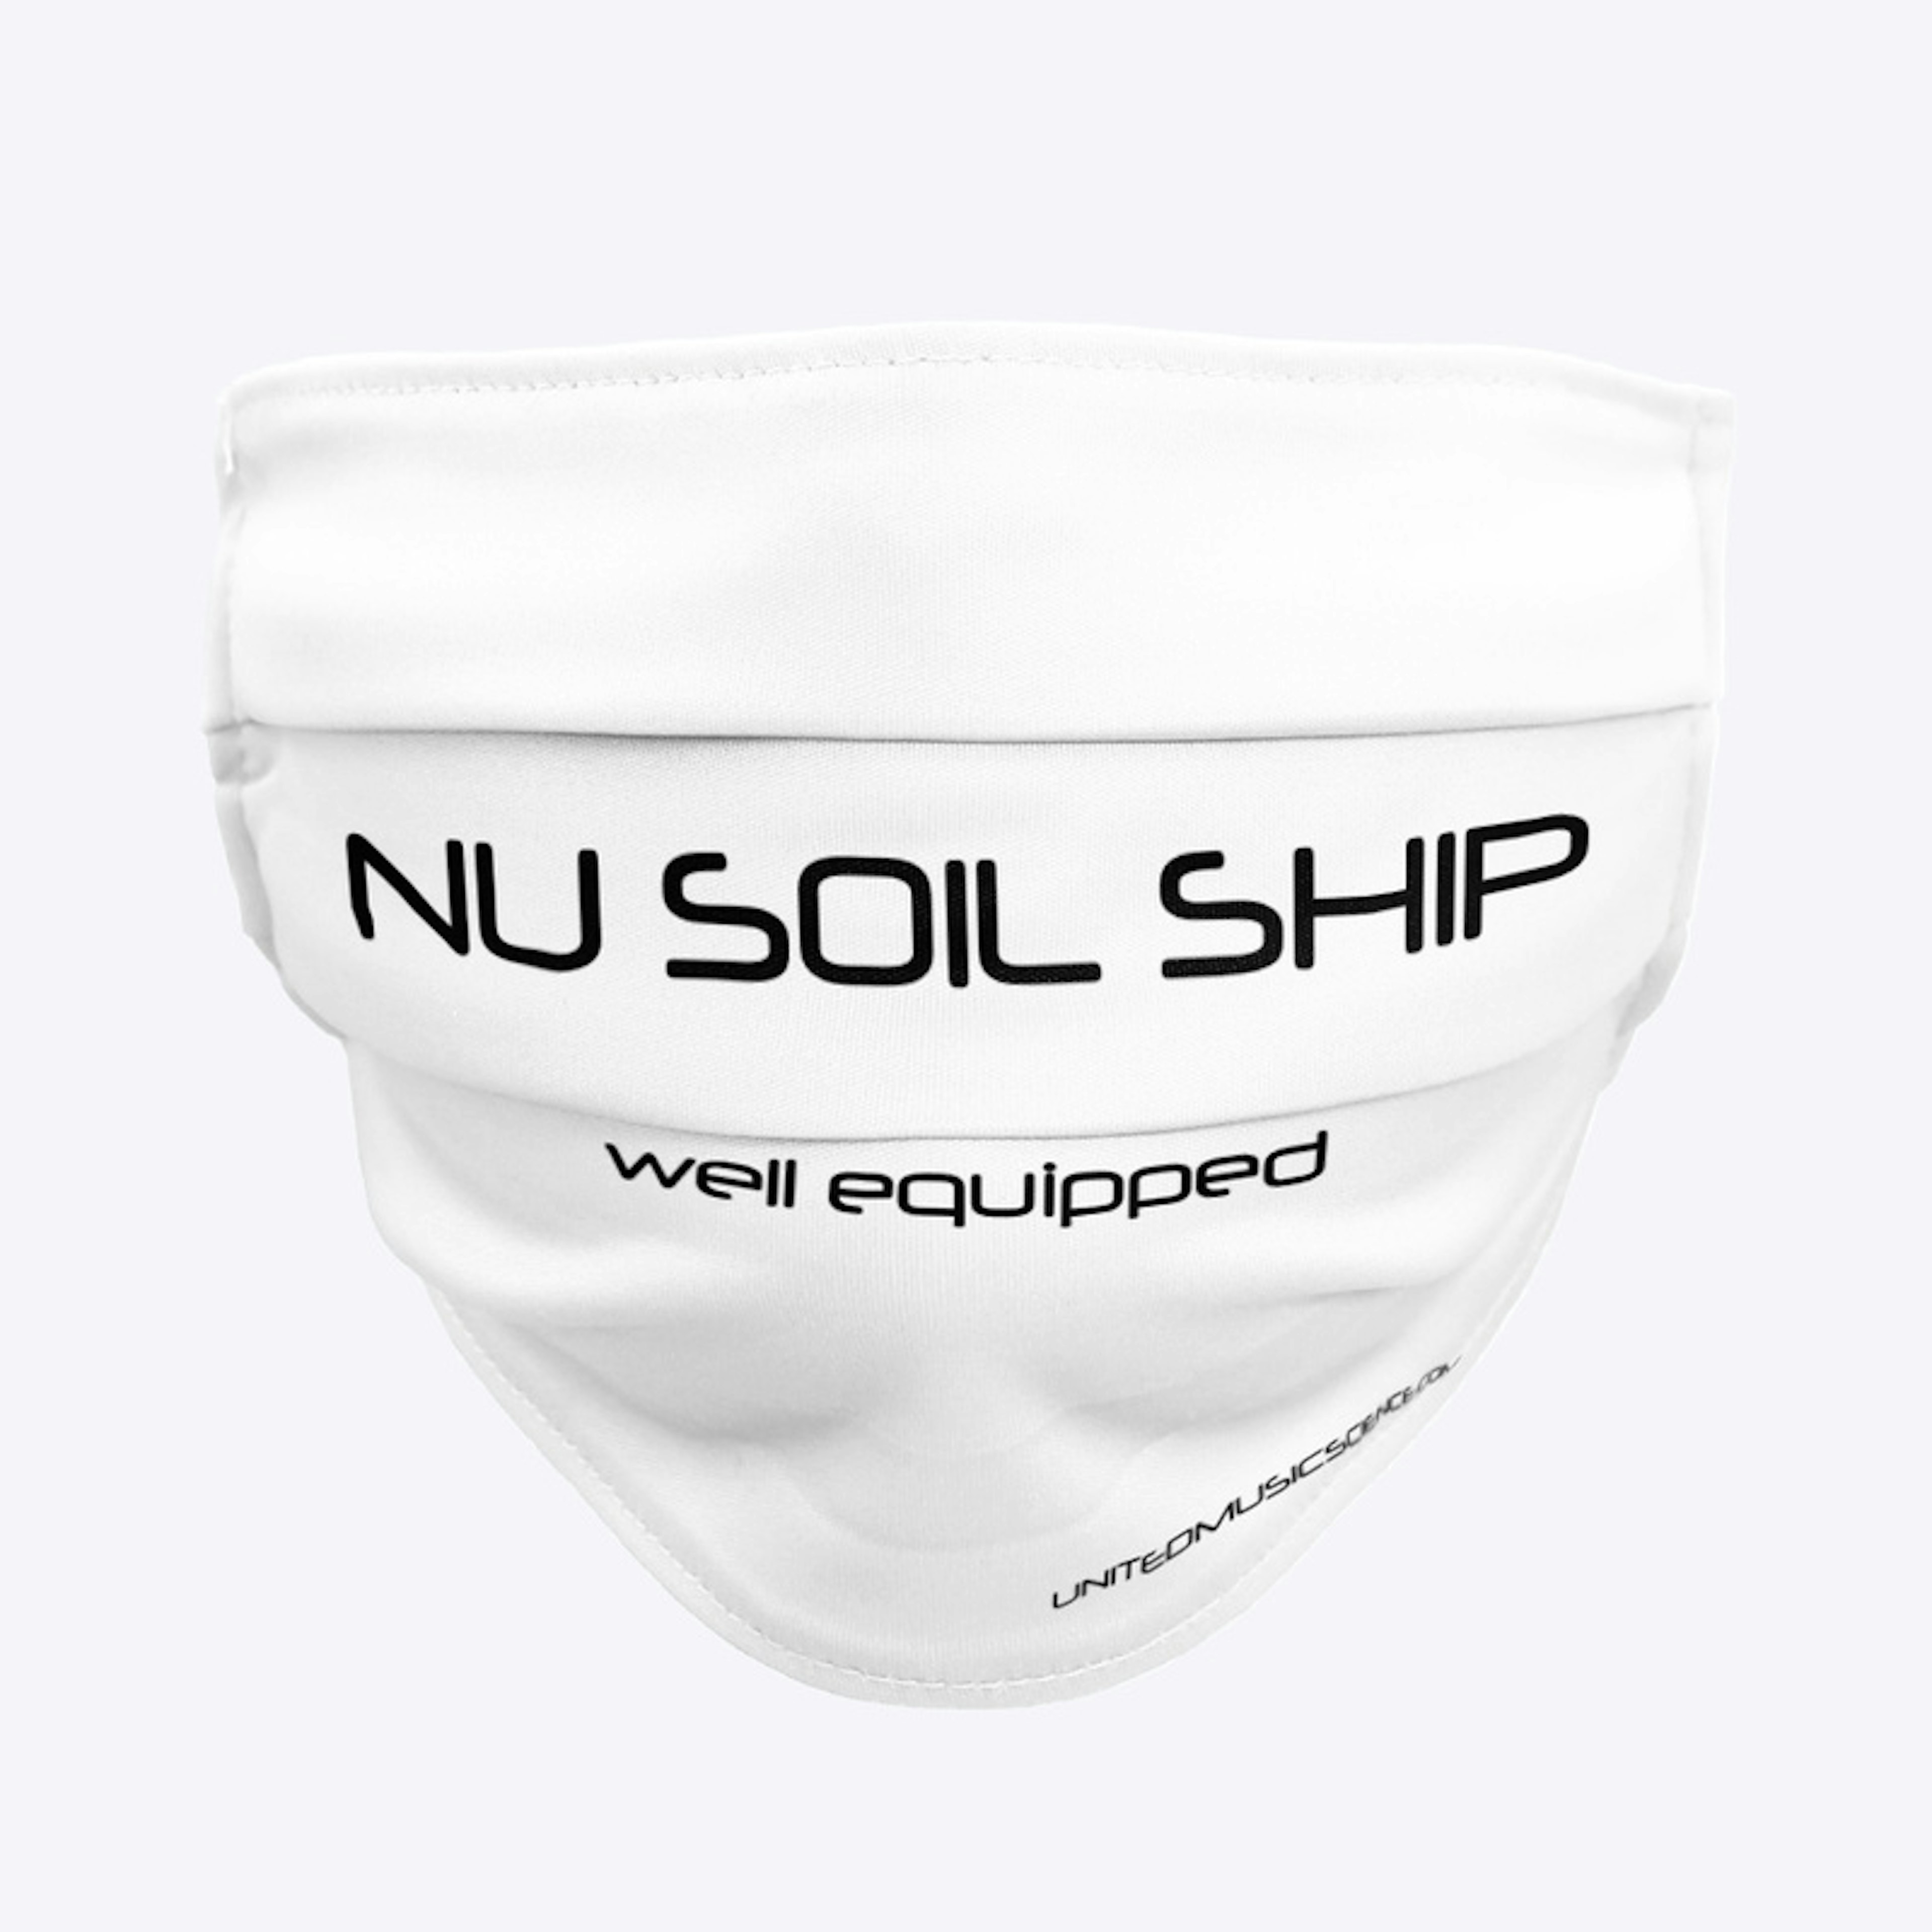 NU SOIL SHIP 